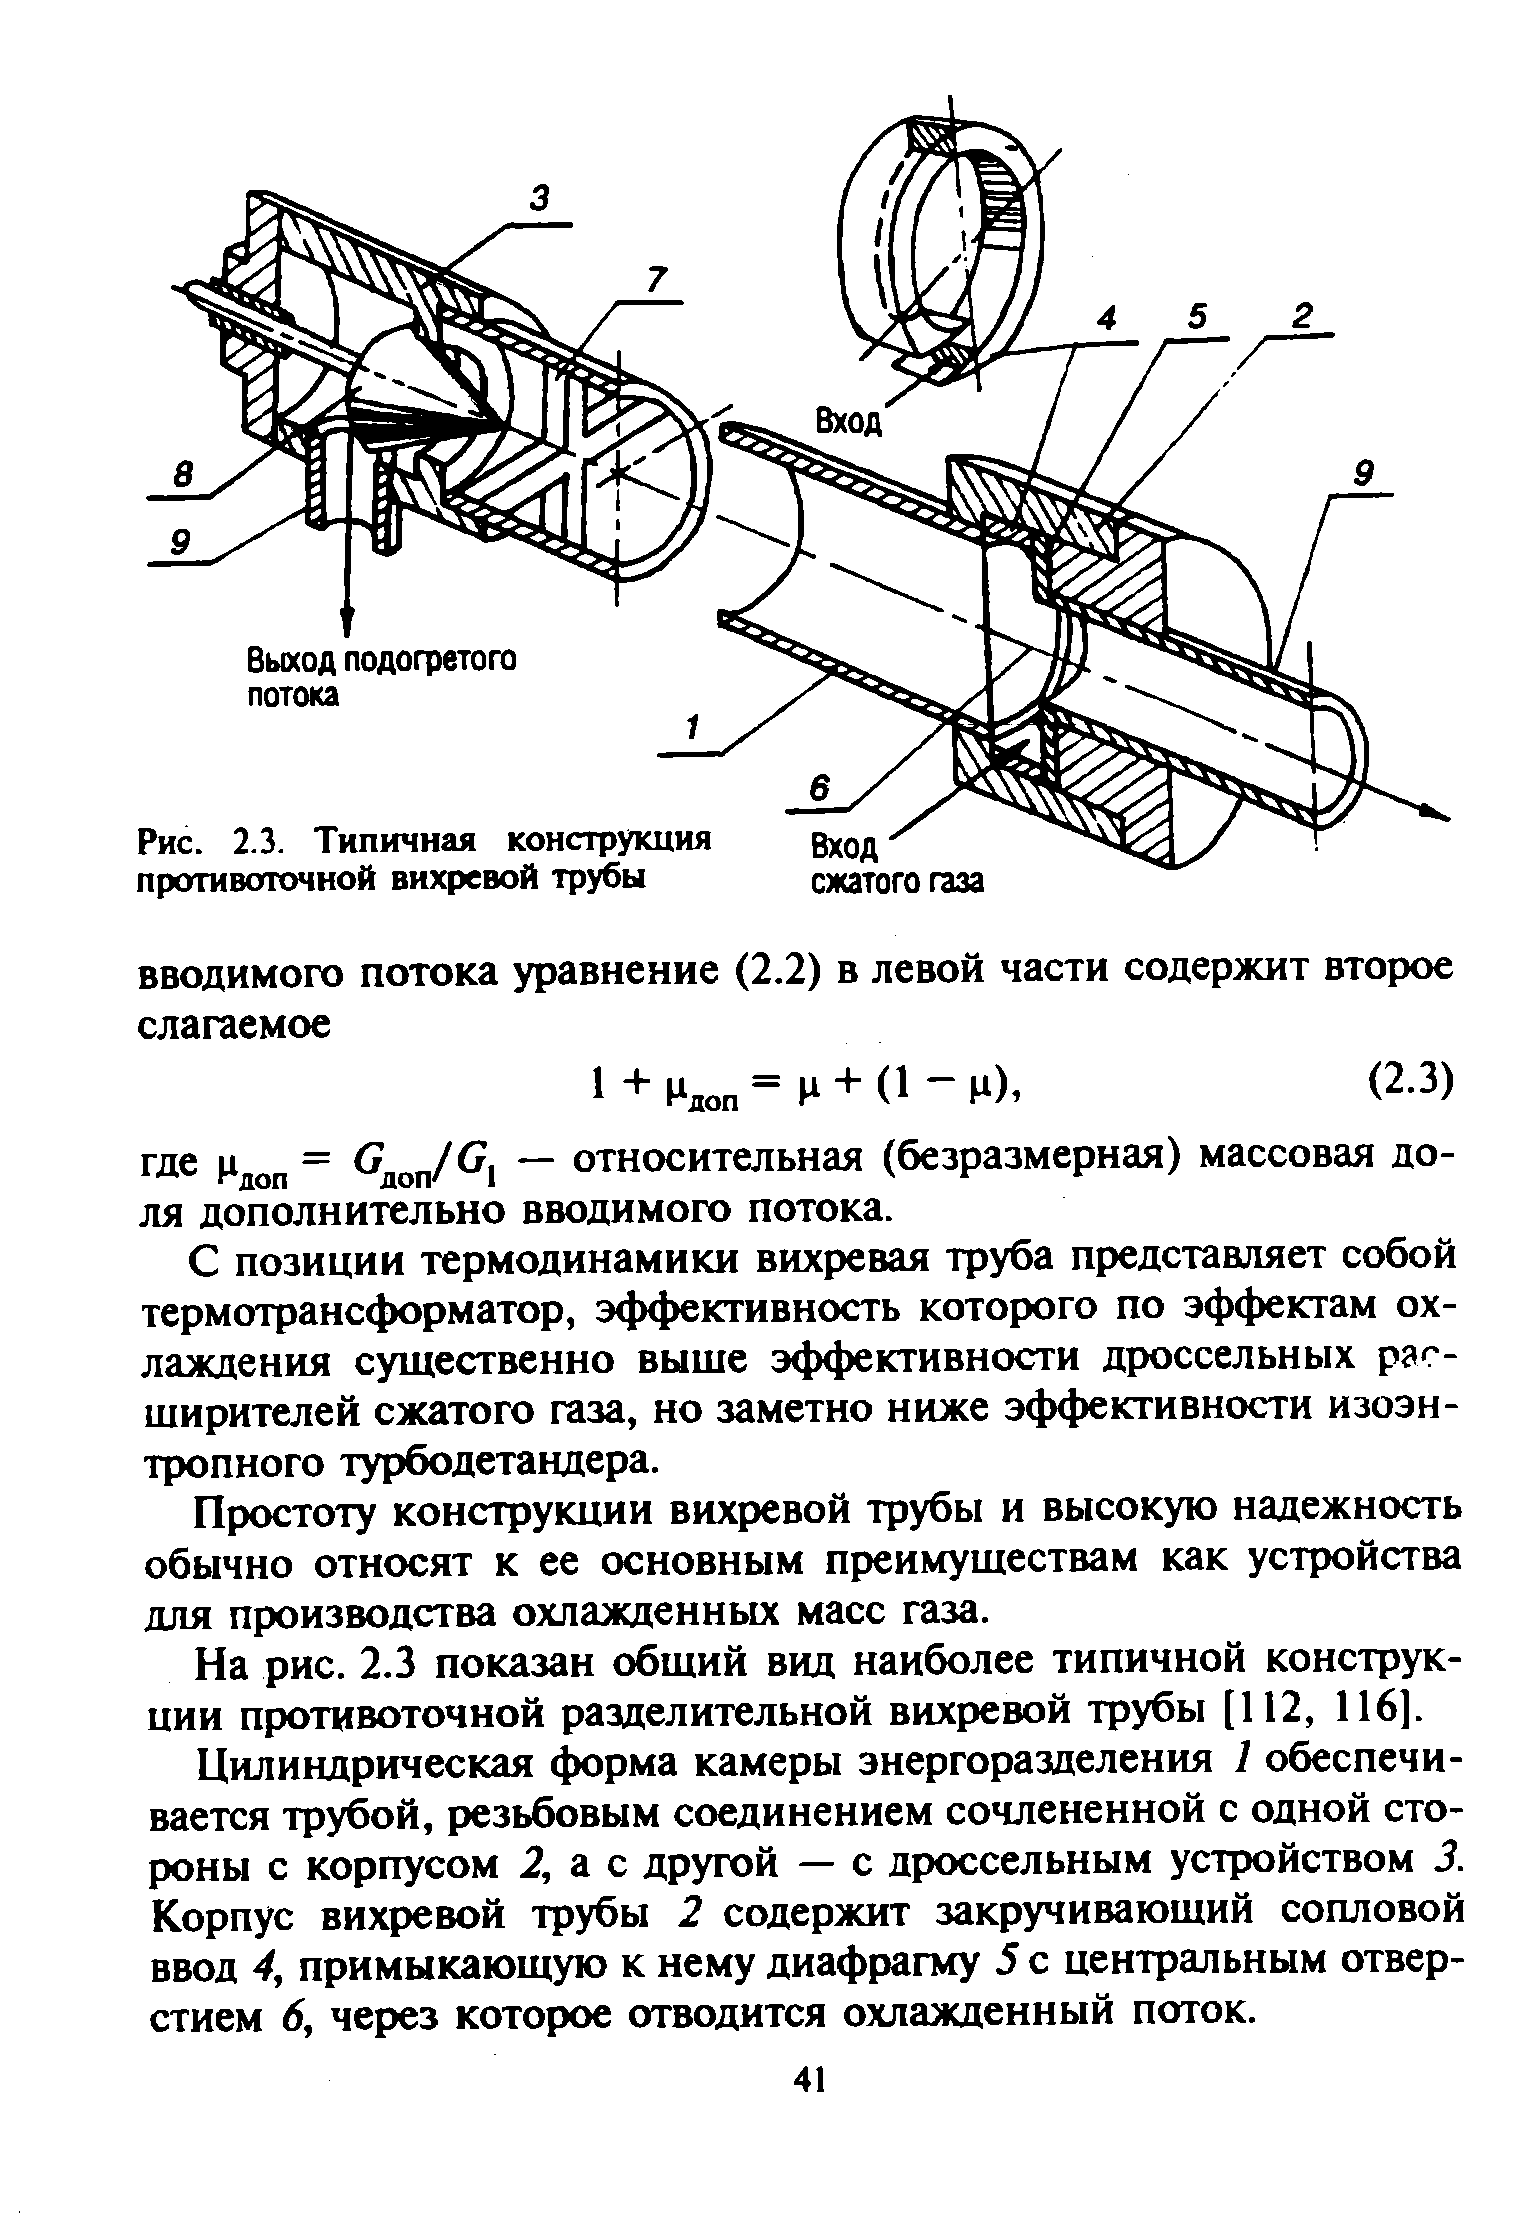 Рис. 2.3. Типичная конструкция противоточной вихревой трубы
